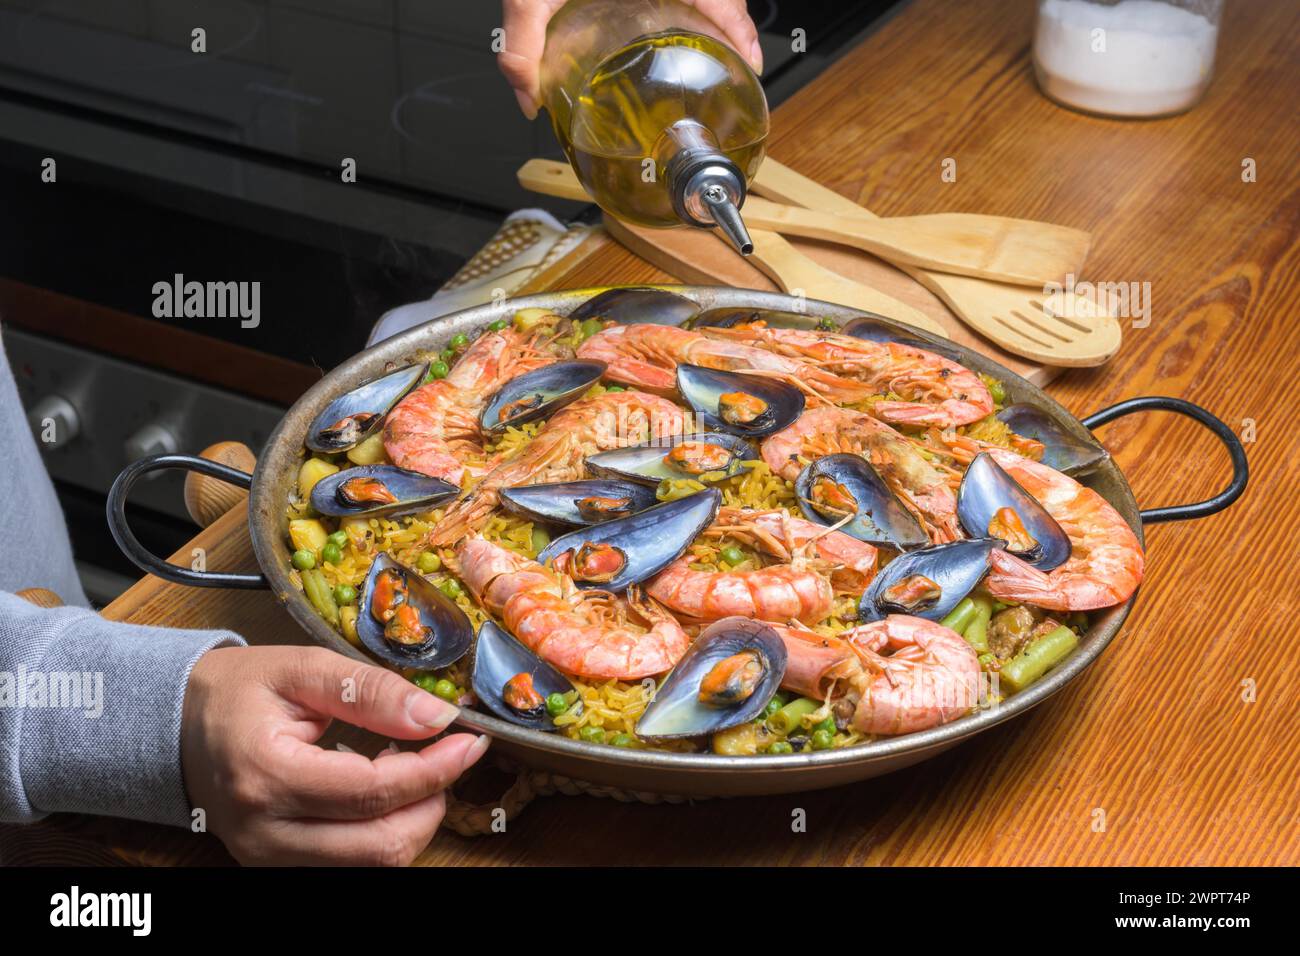 Verser de l'huile d'olive dans une paella aux fruits de mer, rehausser les saveurs de ce plat espagnol classique, cuisine espagnole typique, Majorque, Îles Baléares, Espagne Banque D'Images